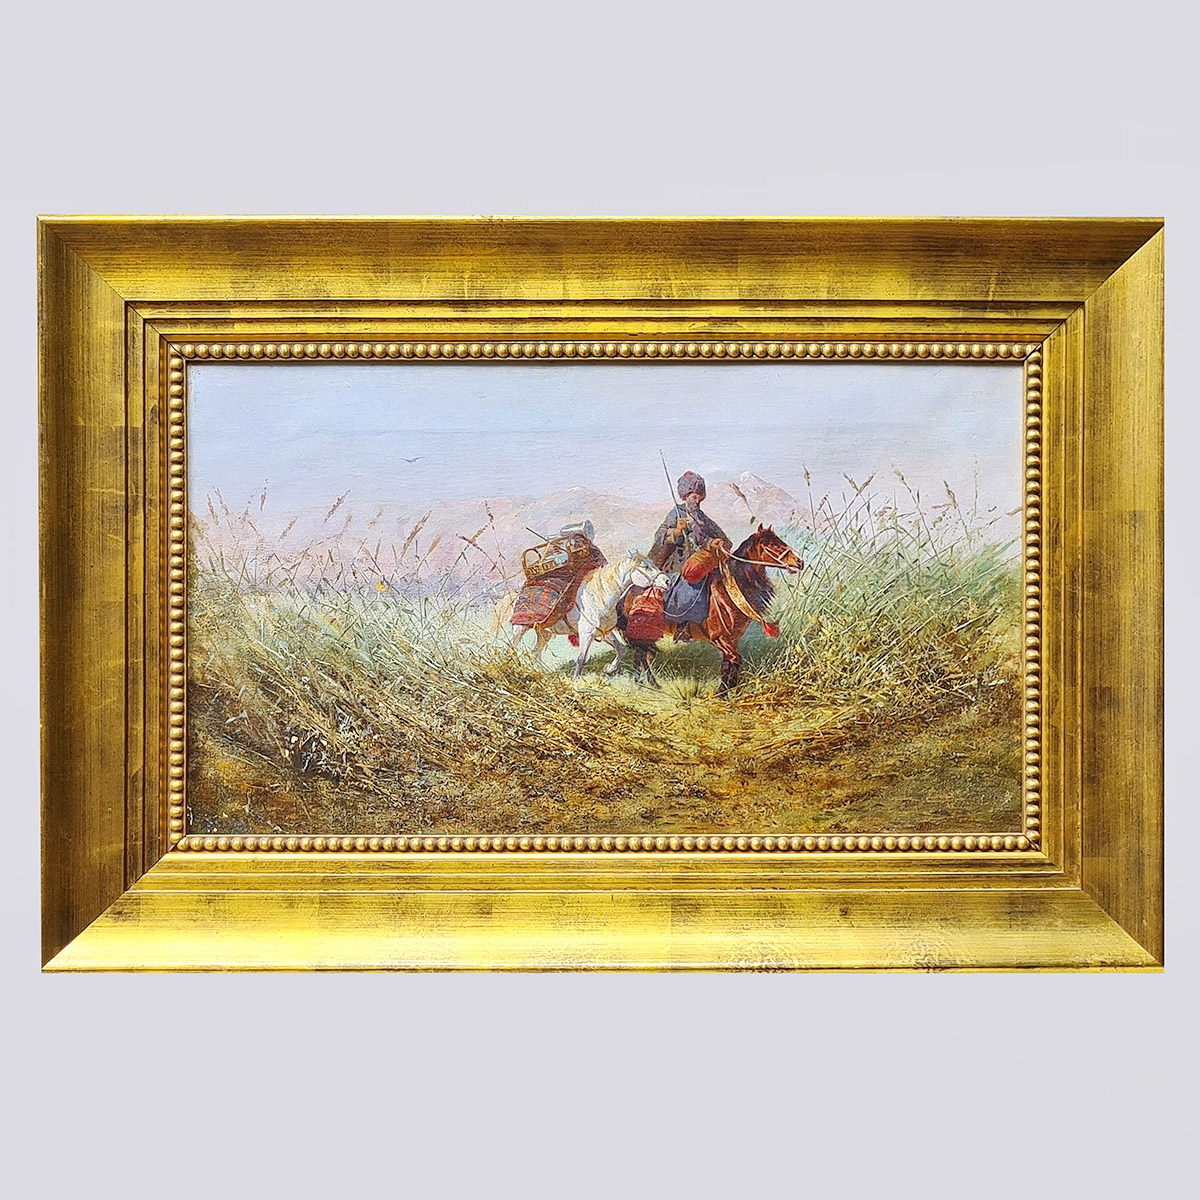 Картина «Всадник в пути», холст, масло (1880-1890 гг, Габашвили Г.И.)